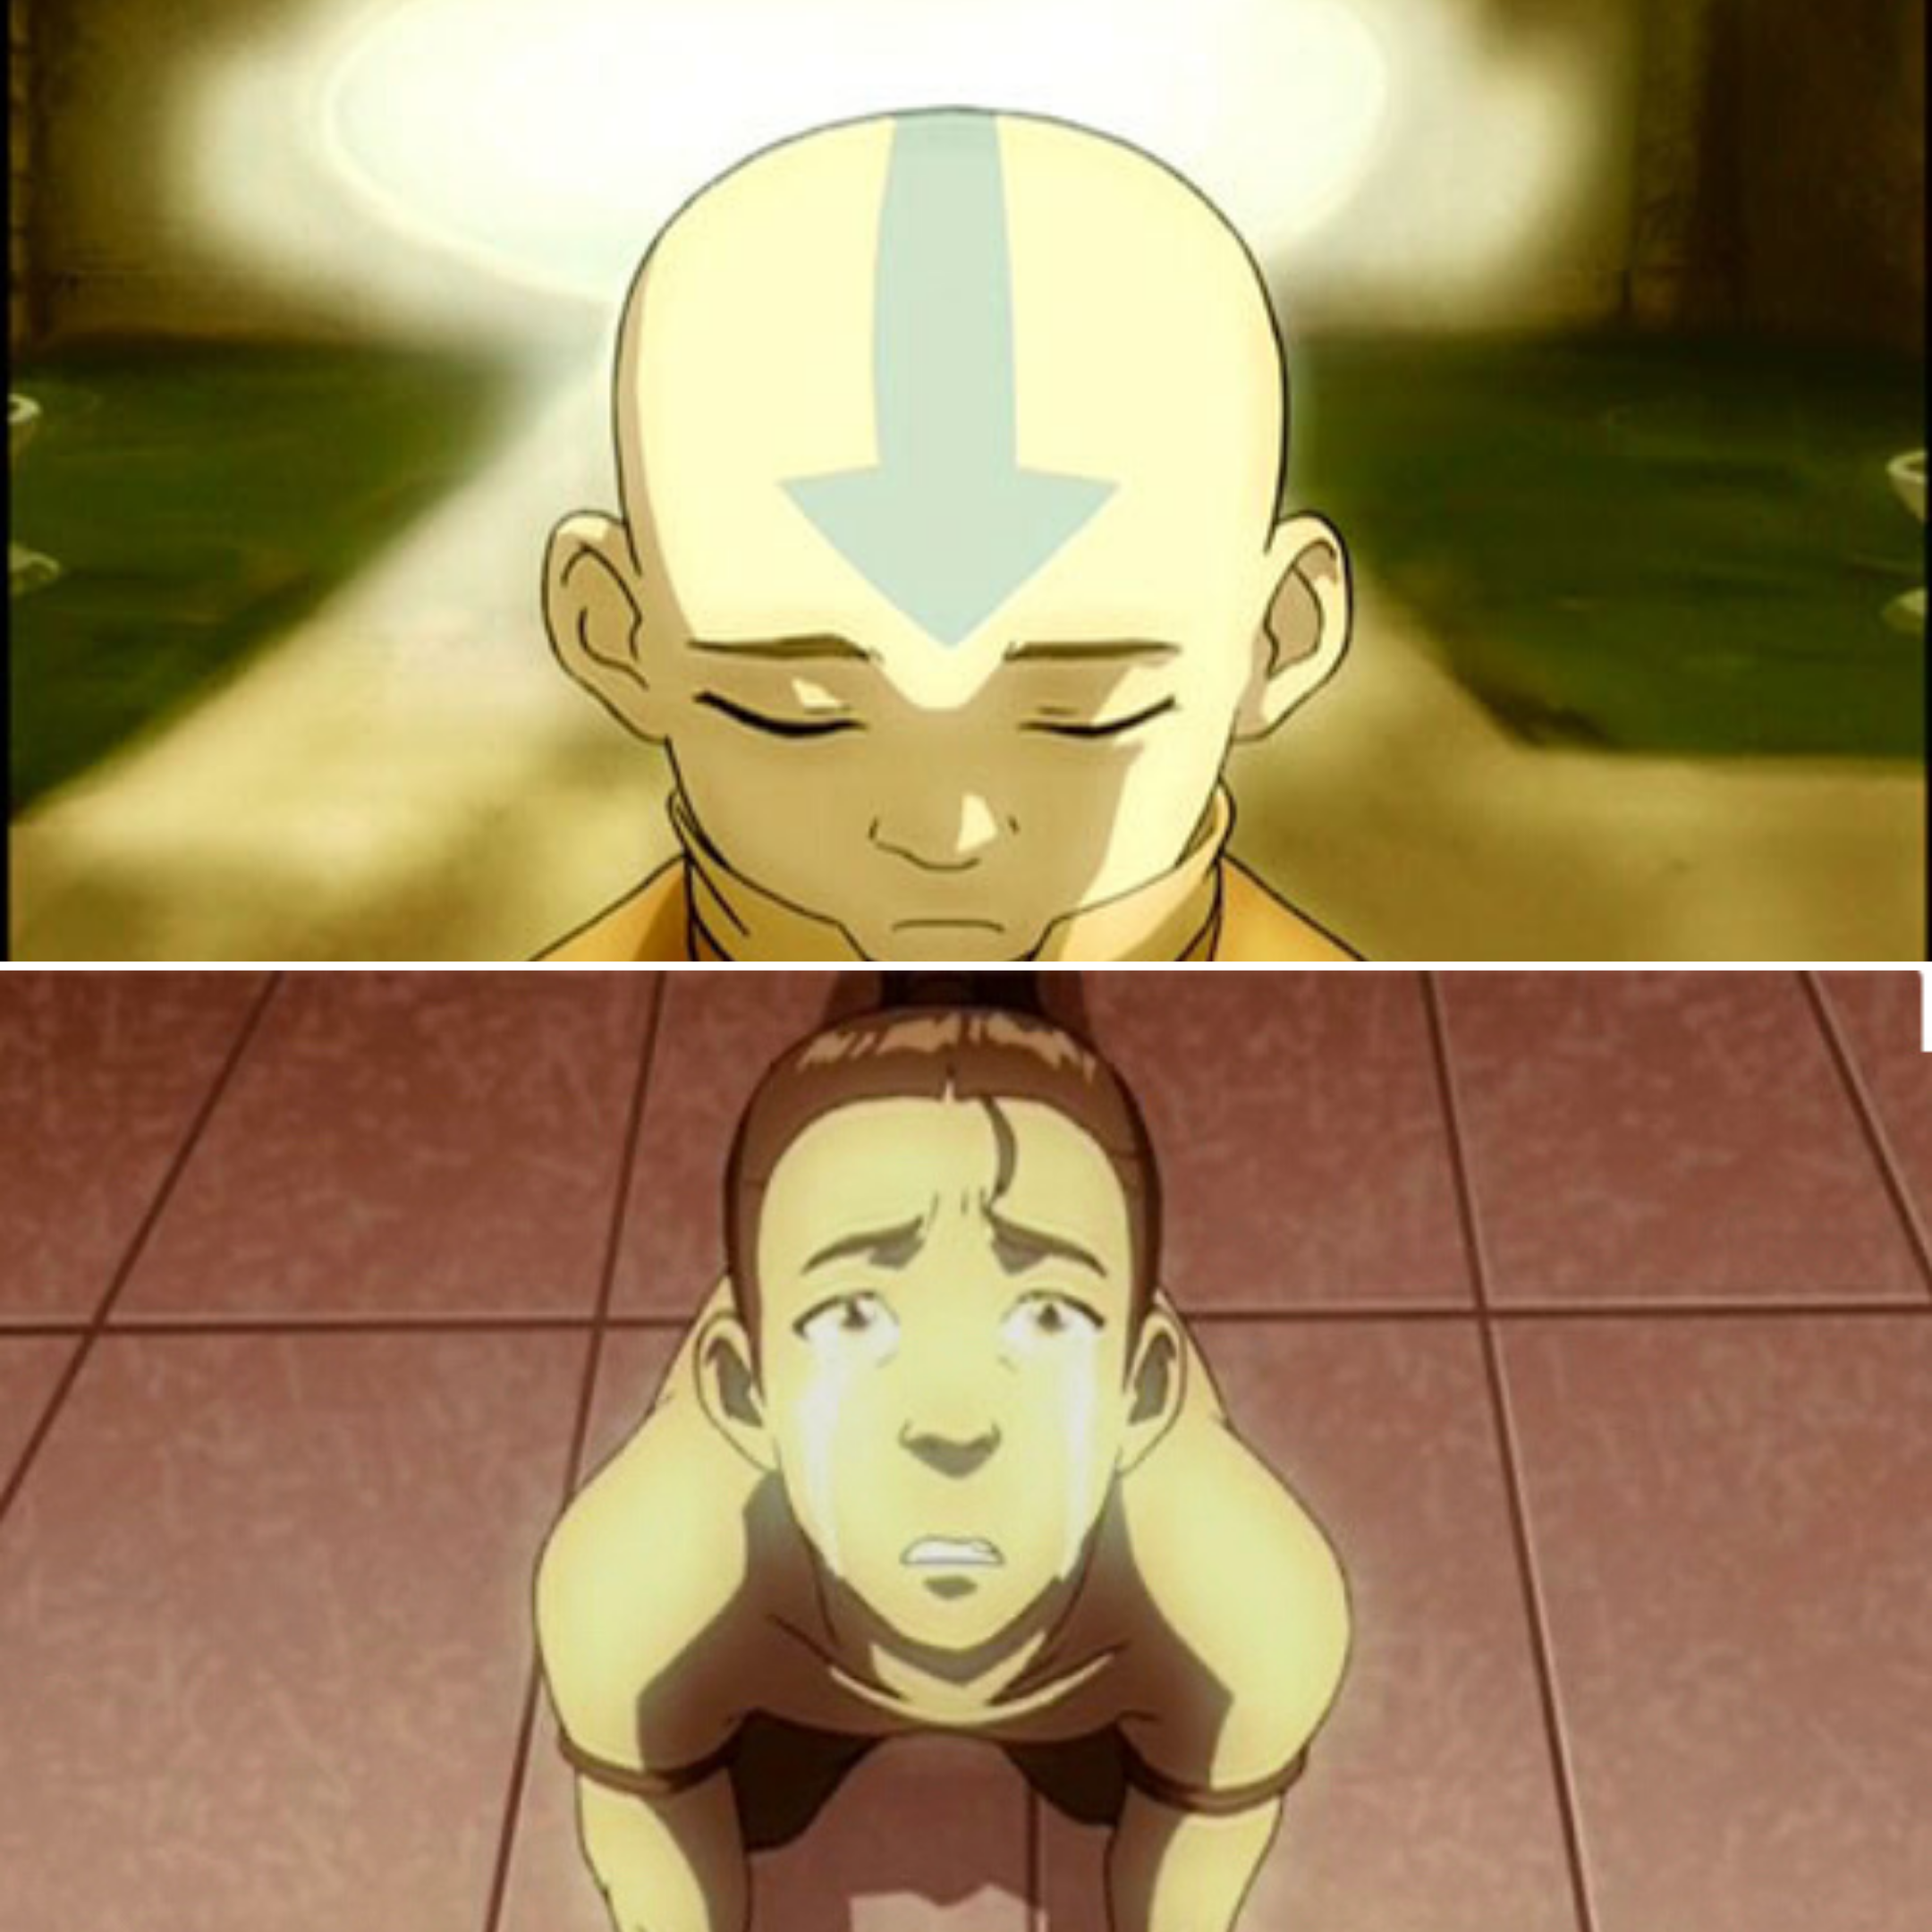 Tảng băng của Avatar Aang là hình ảnh đáng nhớ trong phiên bản Nhân Vật Cuối Cùng. Tìm hiểu về tảng băng và những sự kiện quan trọng của câu chuyện trong bộ phim. Dù bạn đã xem bộ phim hay chưa, việc tìm hiểu chi tiết về câu chuyện sẽ khiến bạn phớt lờ công việc và ngồi xem bộ phim suốt cả ngày.